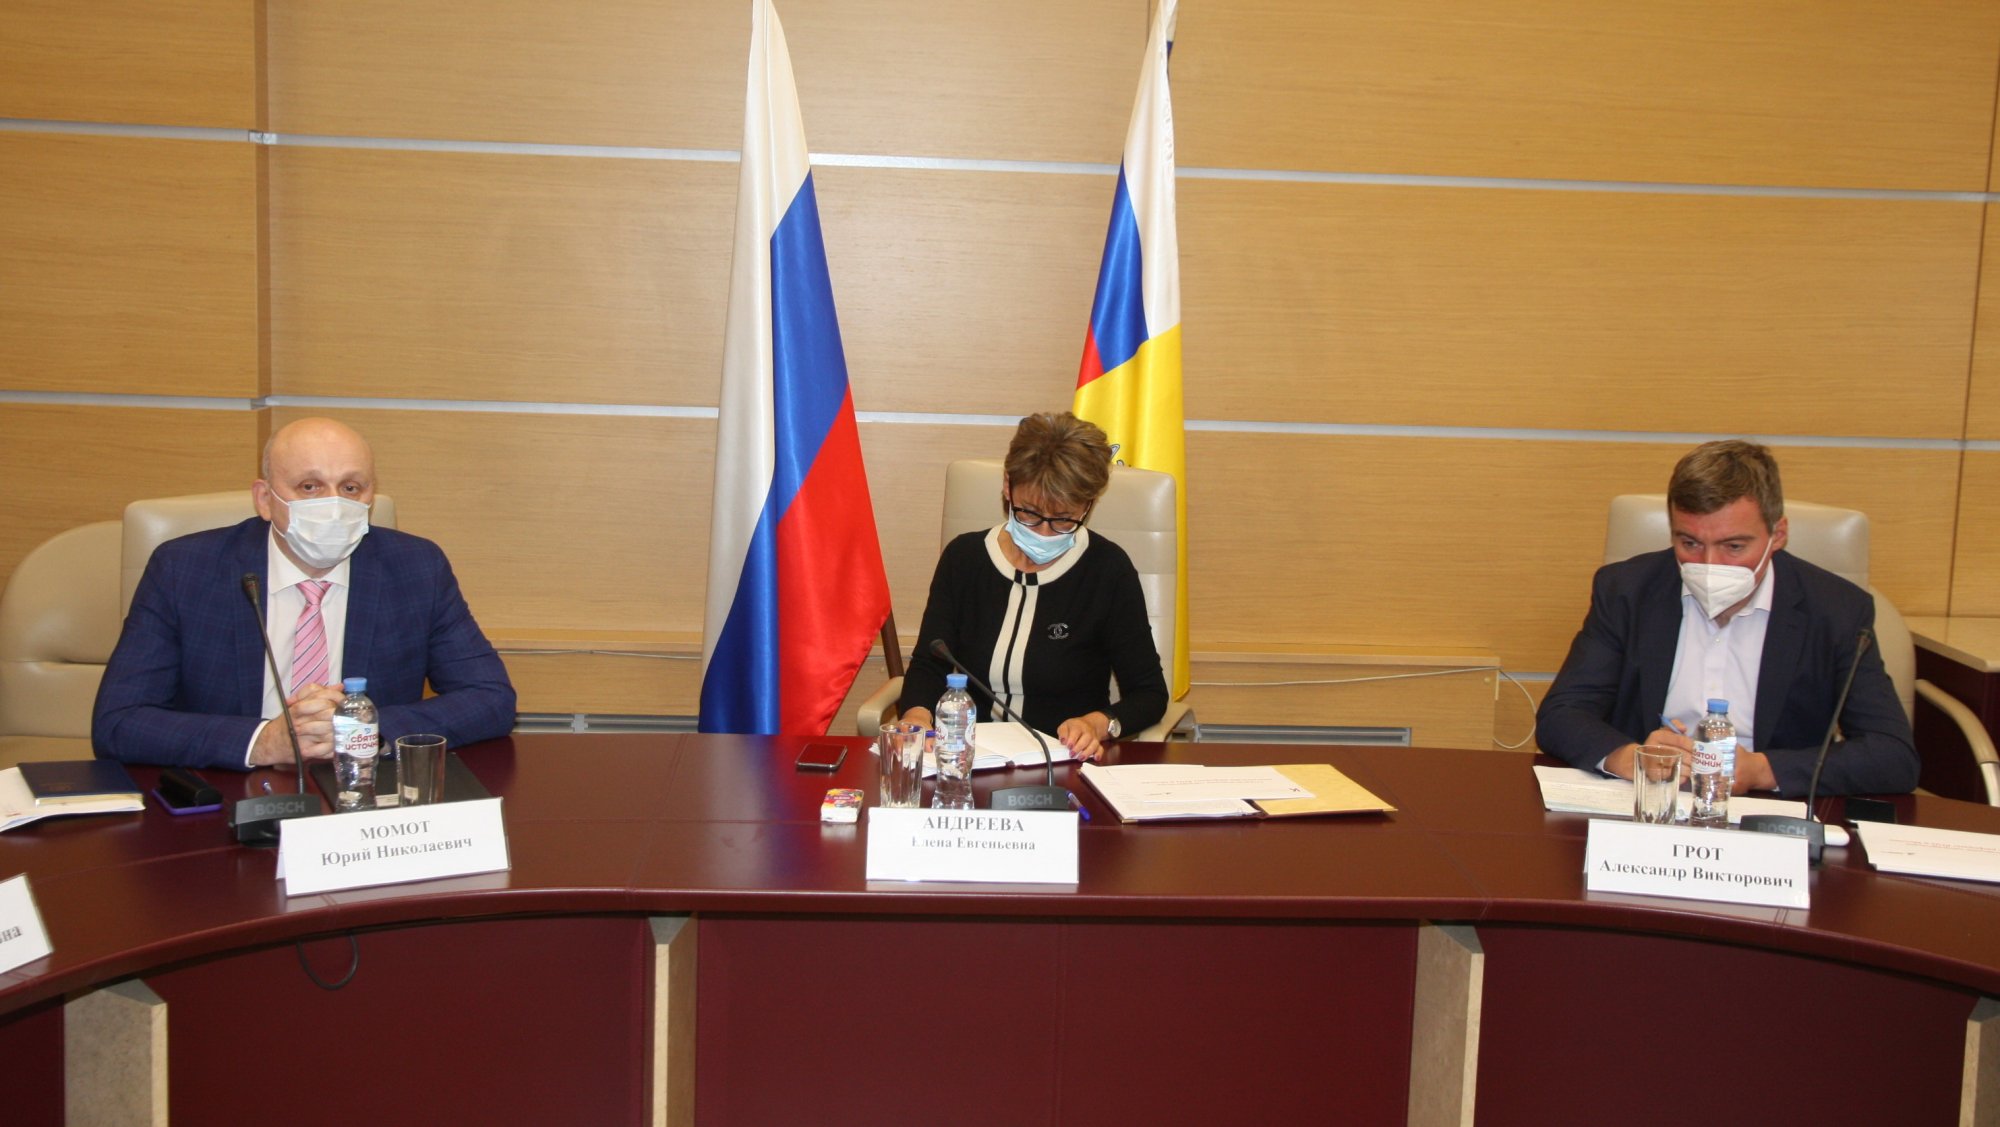 28 сентября состоялось заседание Общественного совета при Управлении Роспотребнадзора по г. Москве